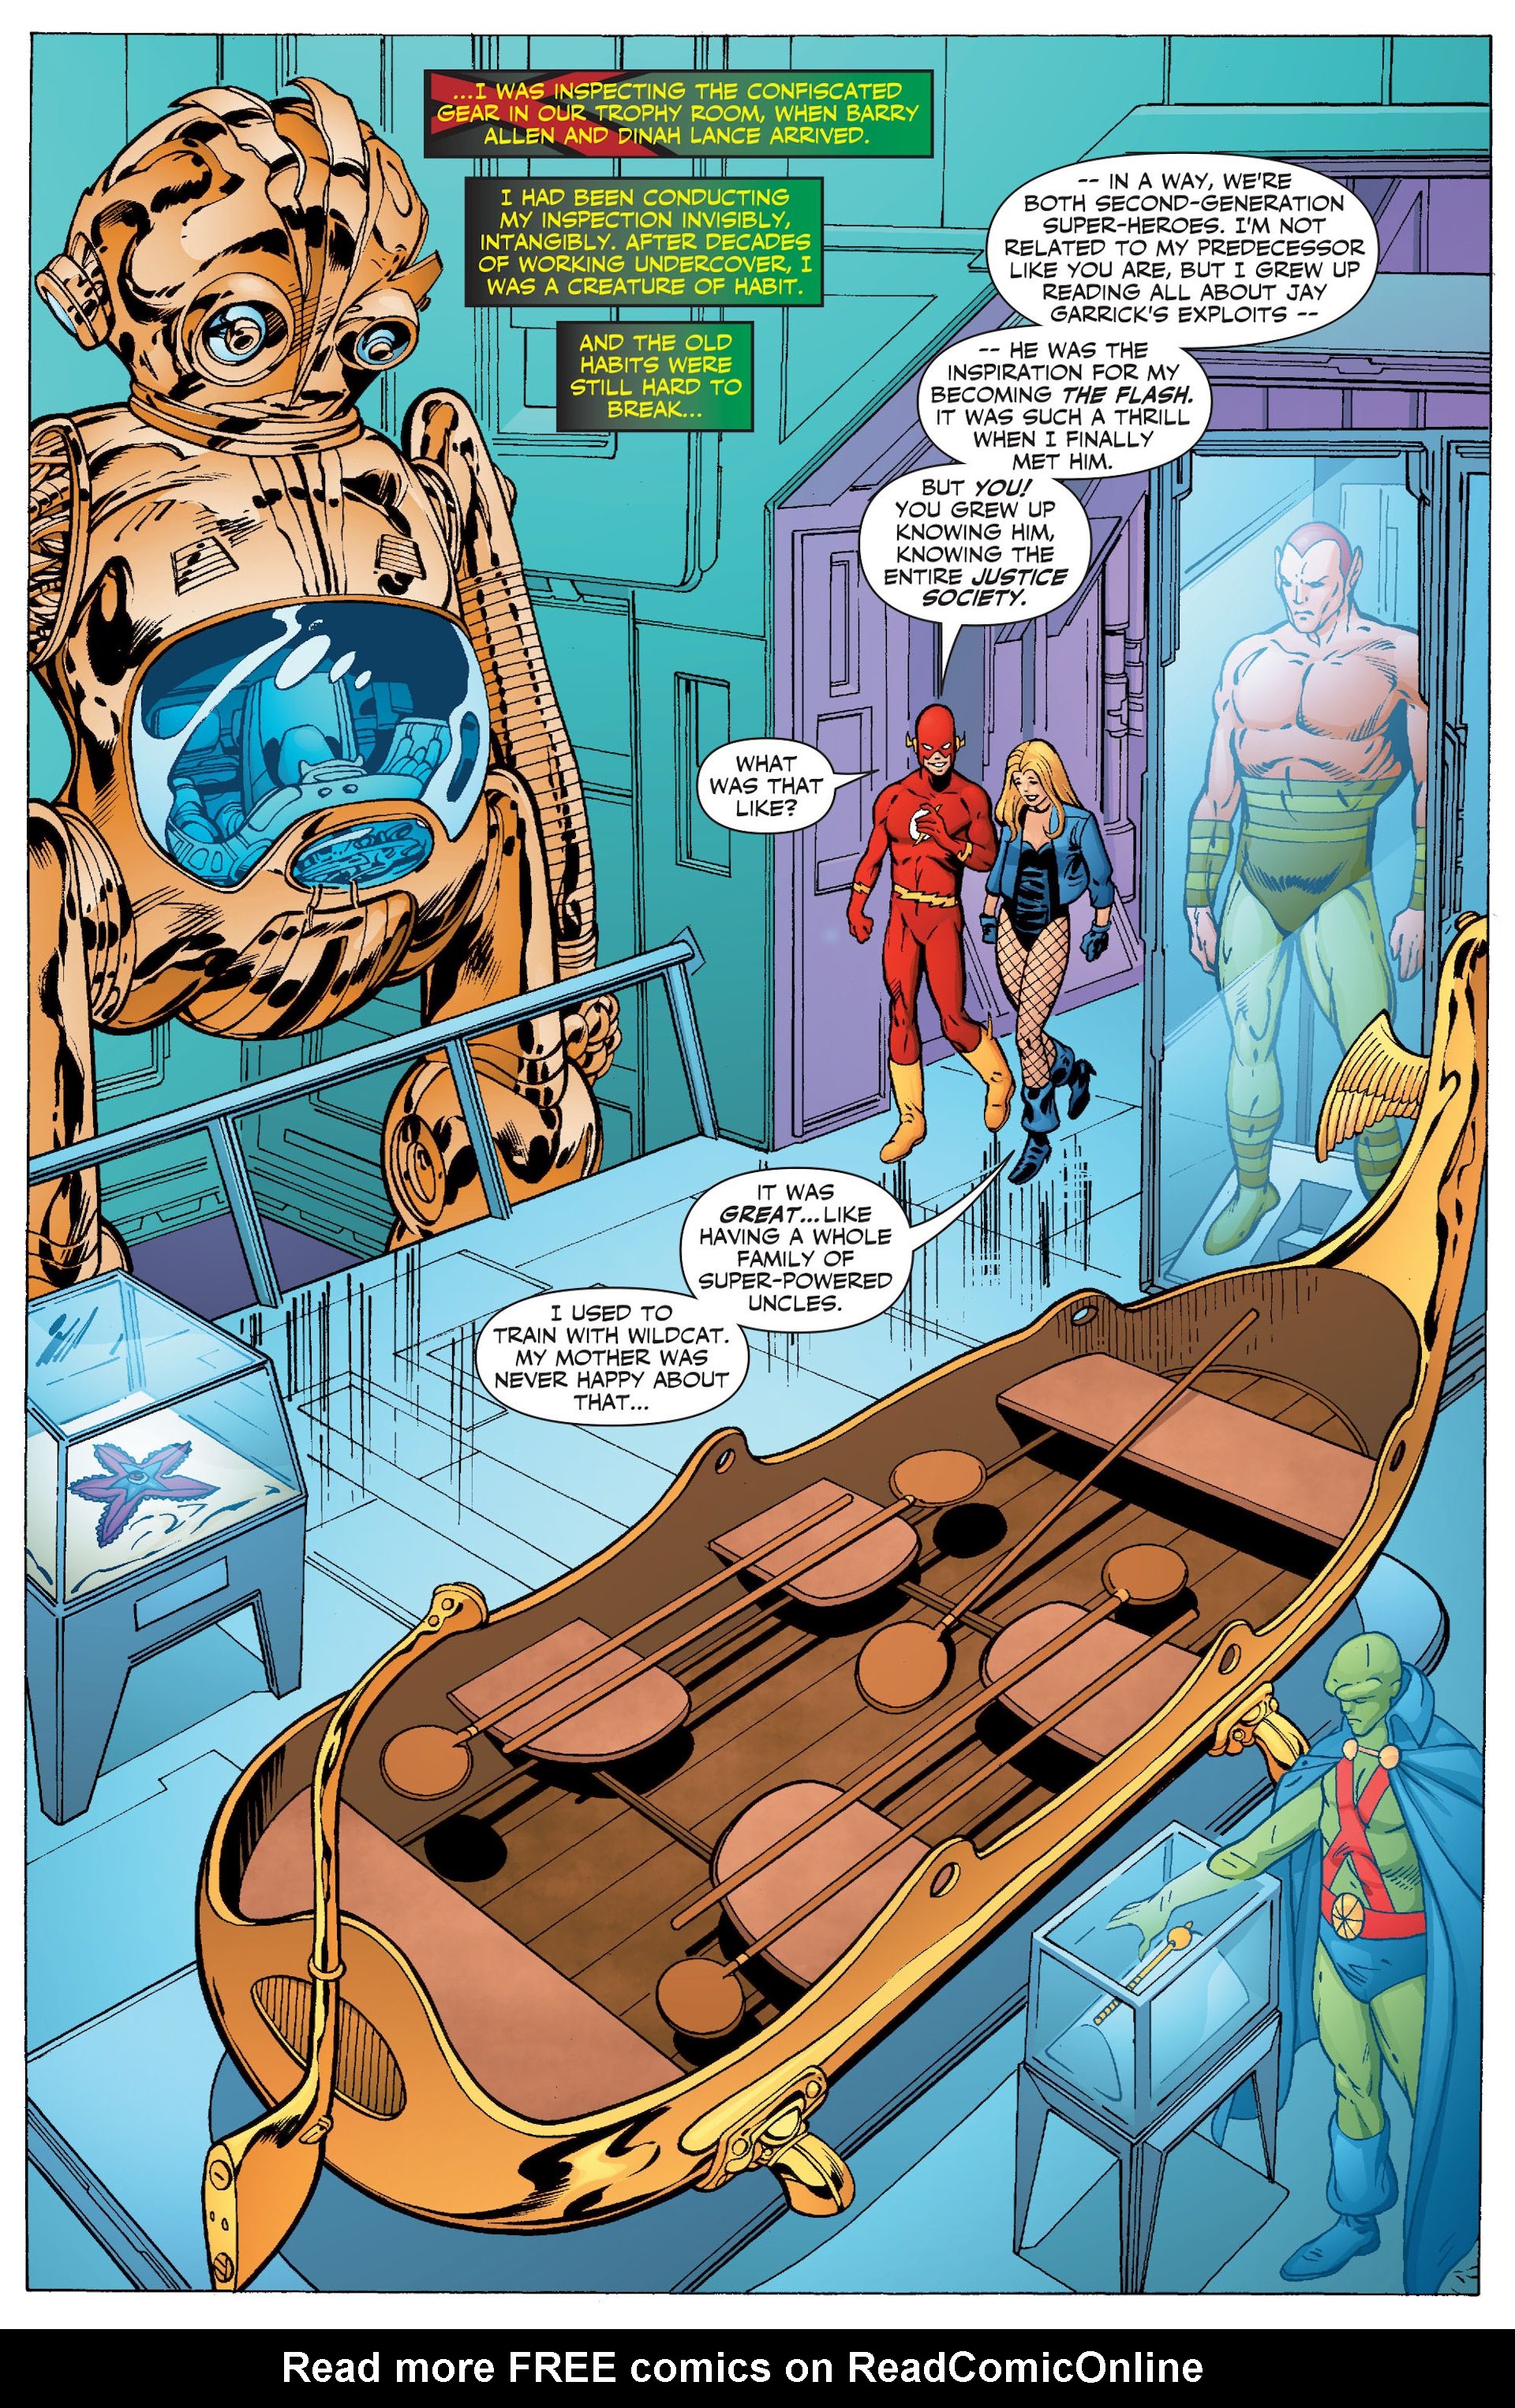 Read online JLA: Classified comic -  Issue #51 - 4